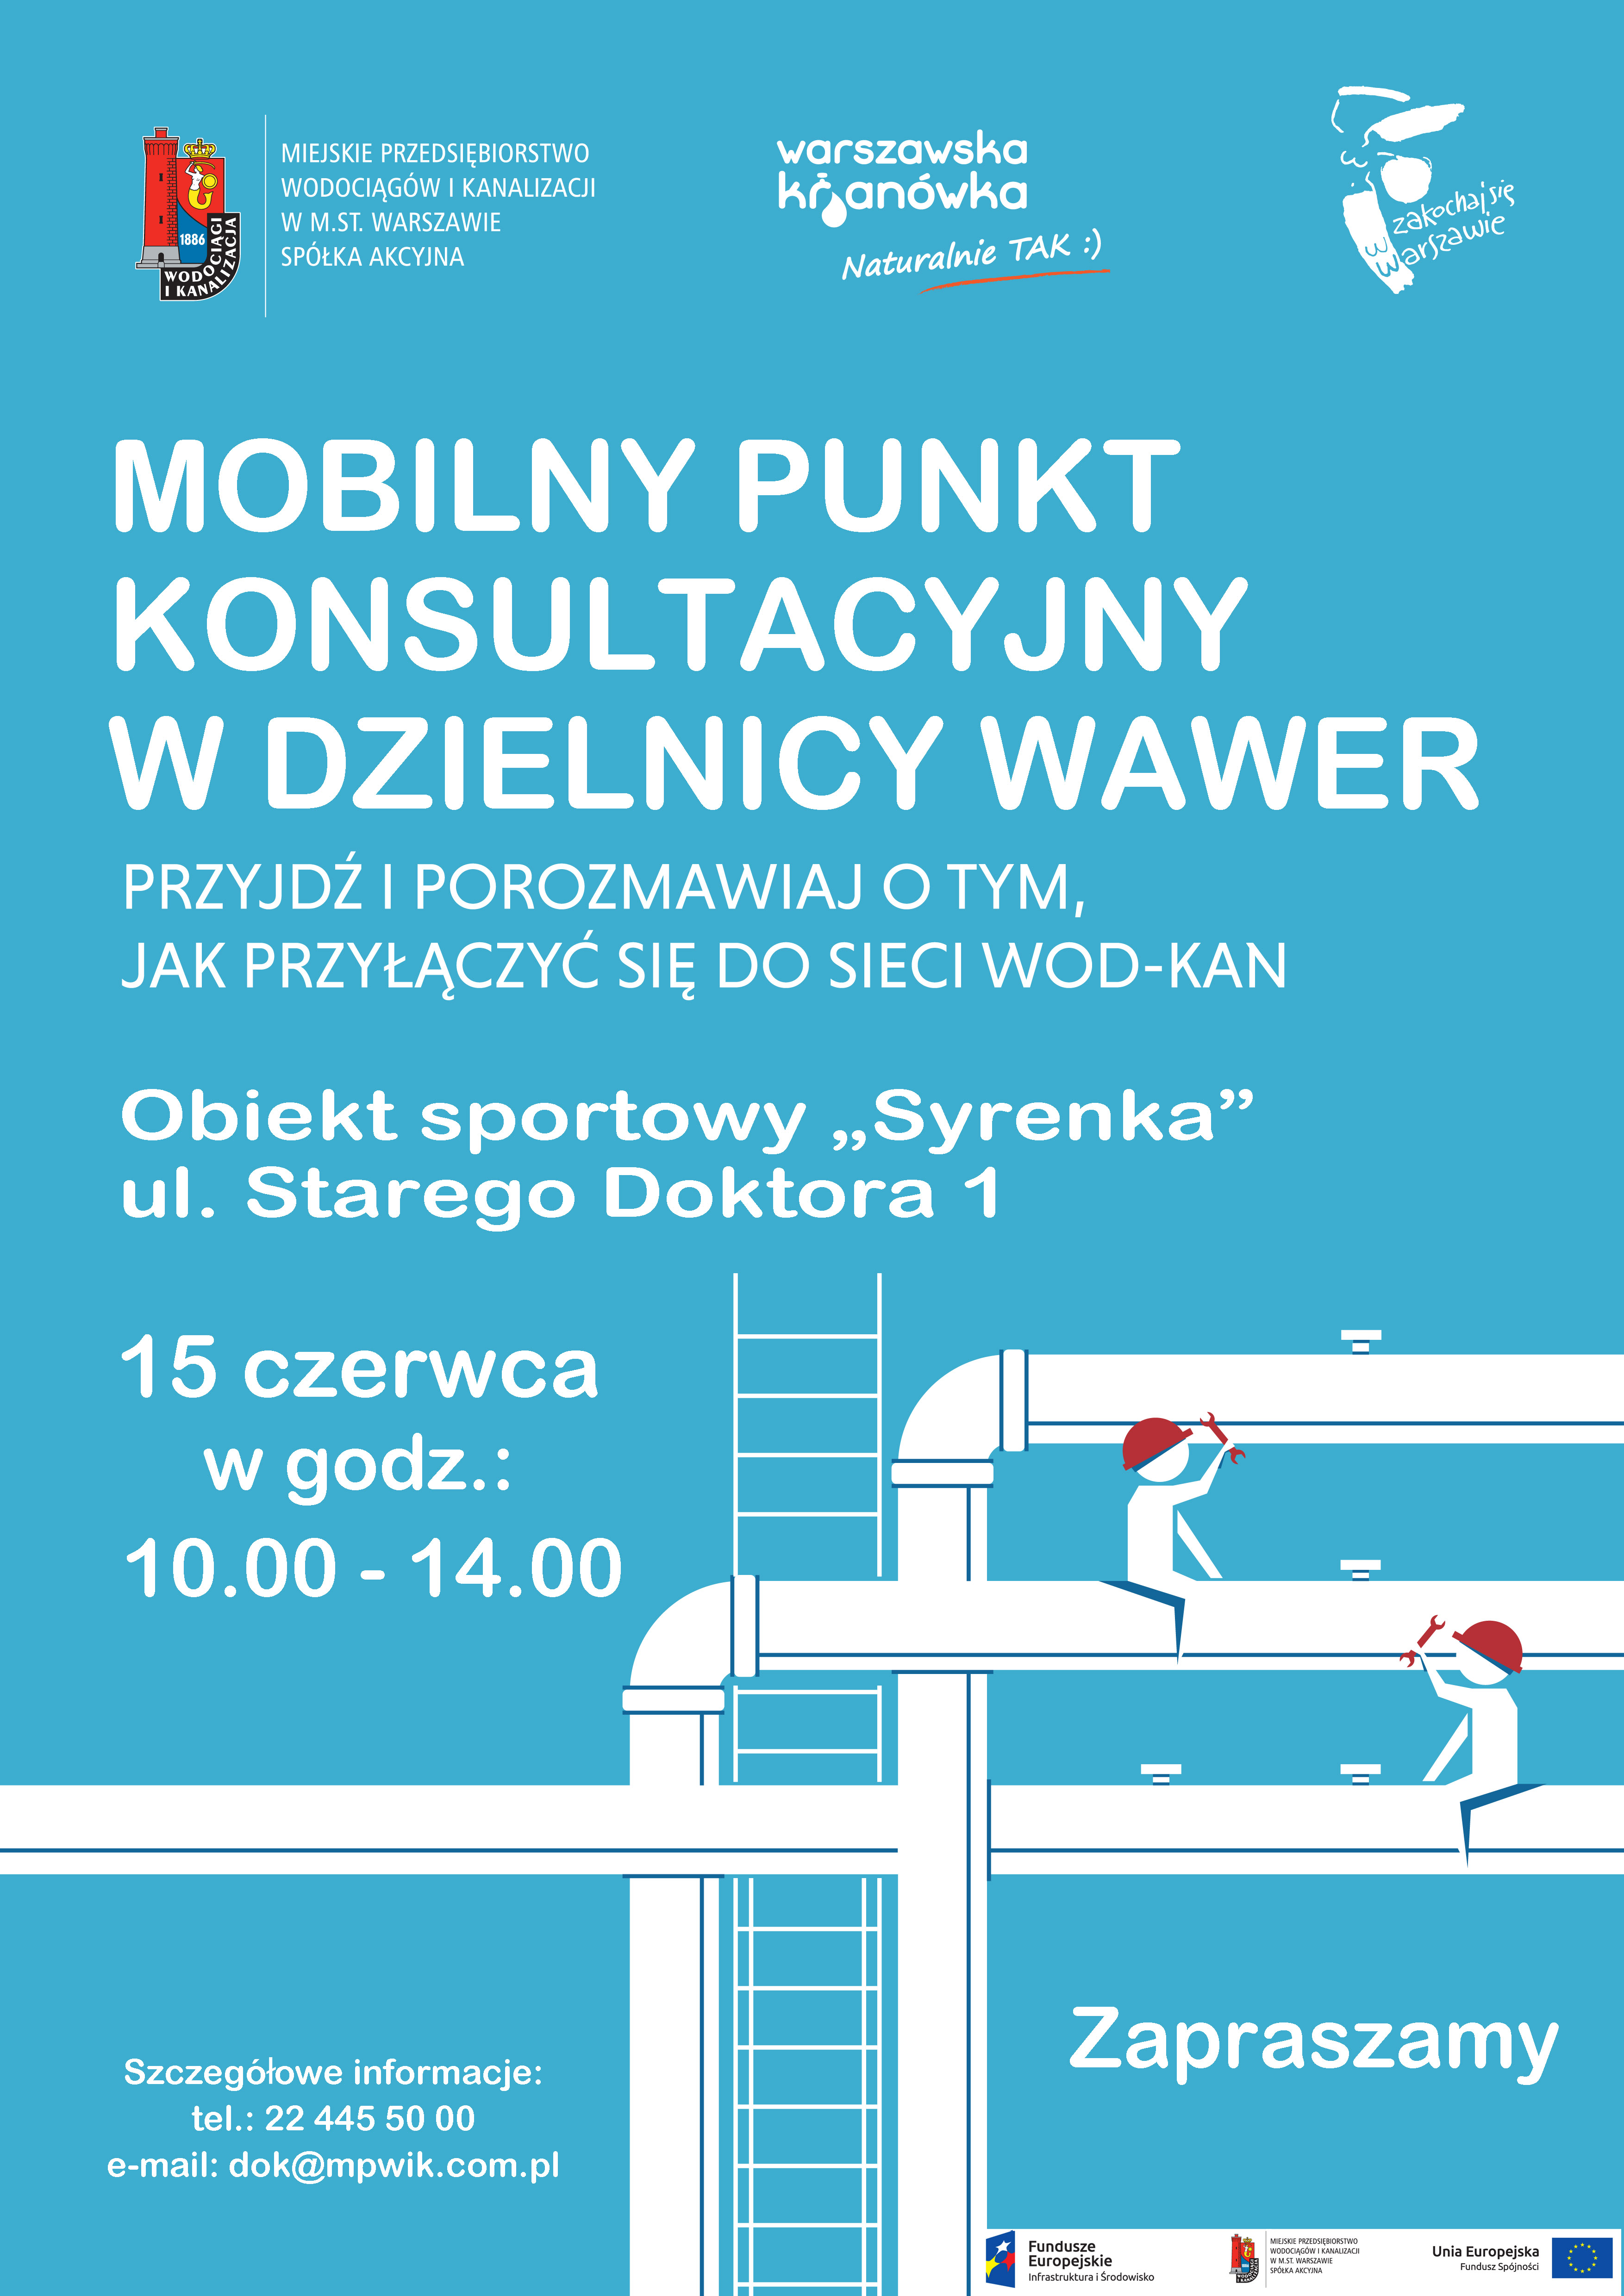 Mobilny punkt informacyjny Miejskiego Przedsiębiorstwa Wodociągów i Kanalizacji w Warszawie na terenie obiektu sportowego Syrenka